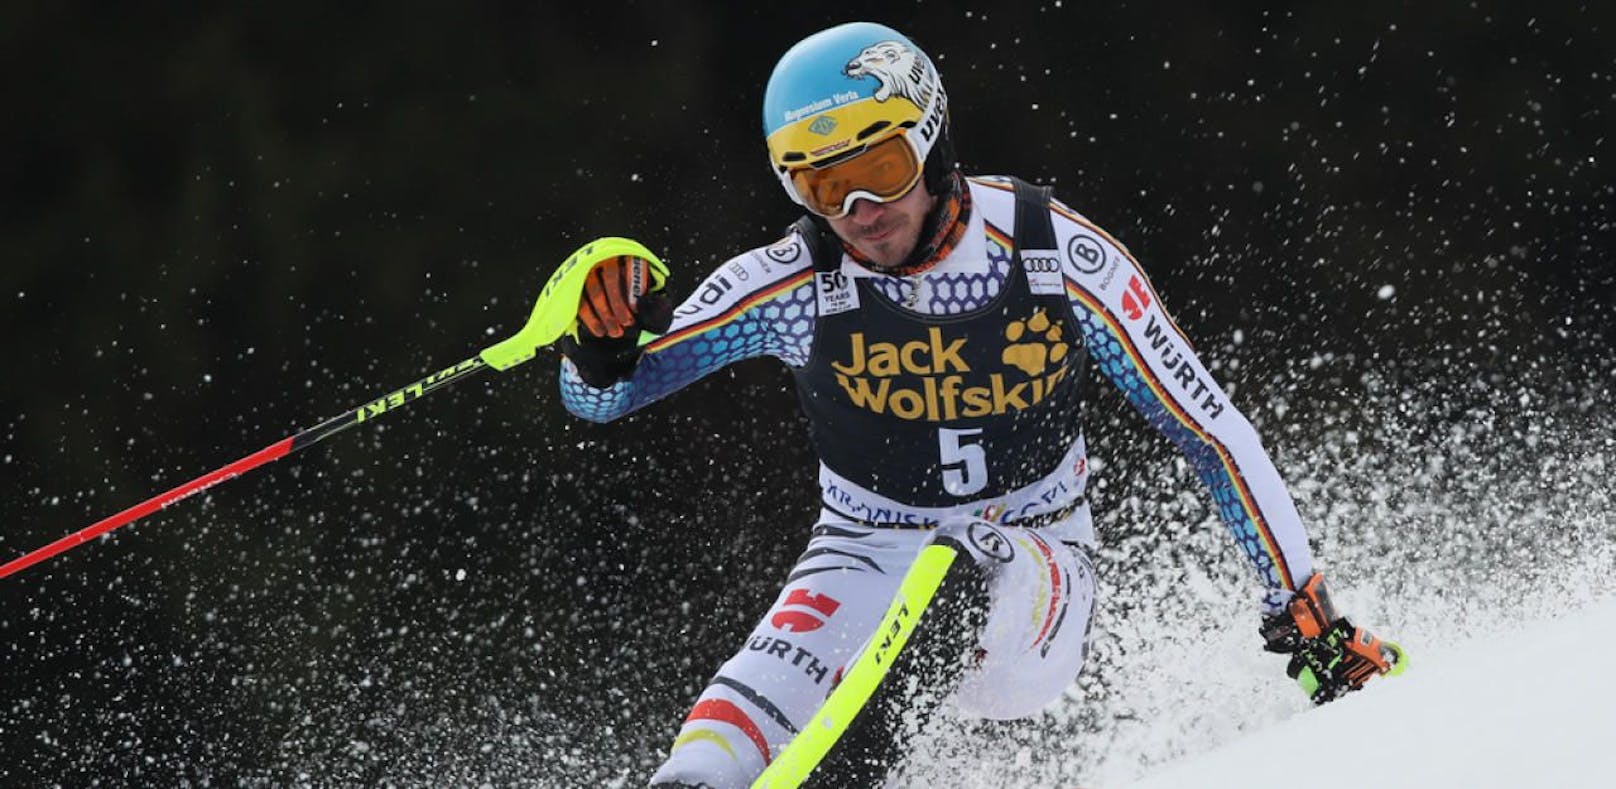 Kreuzbandriss! Saison-Aus für Ski-Star Neureuther